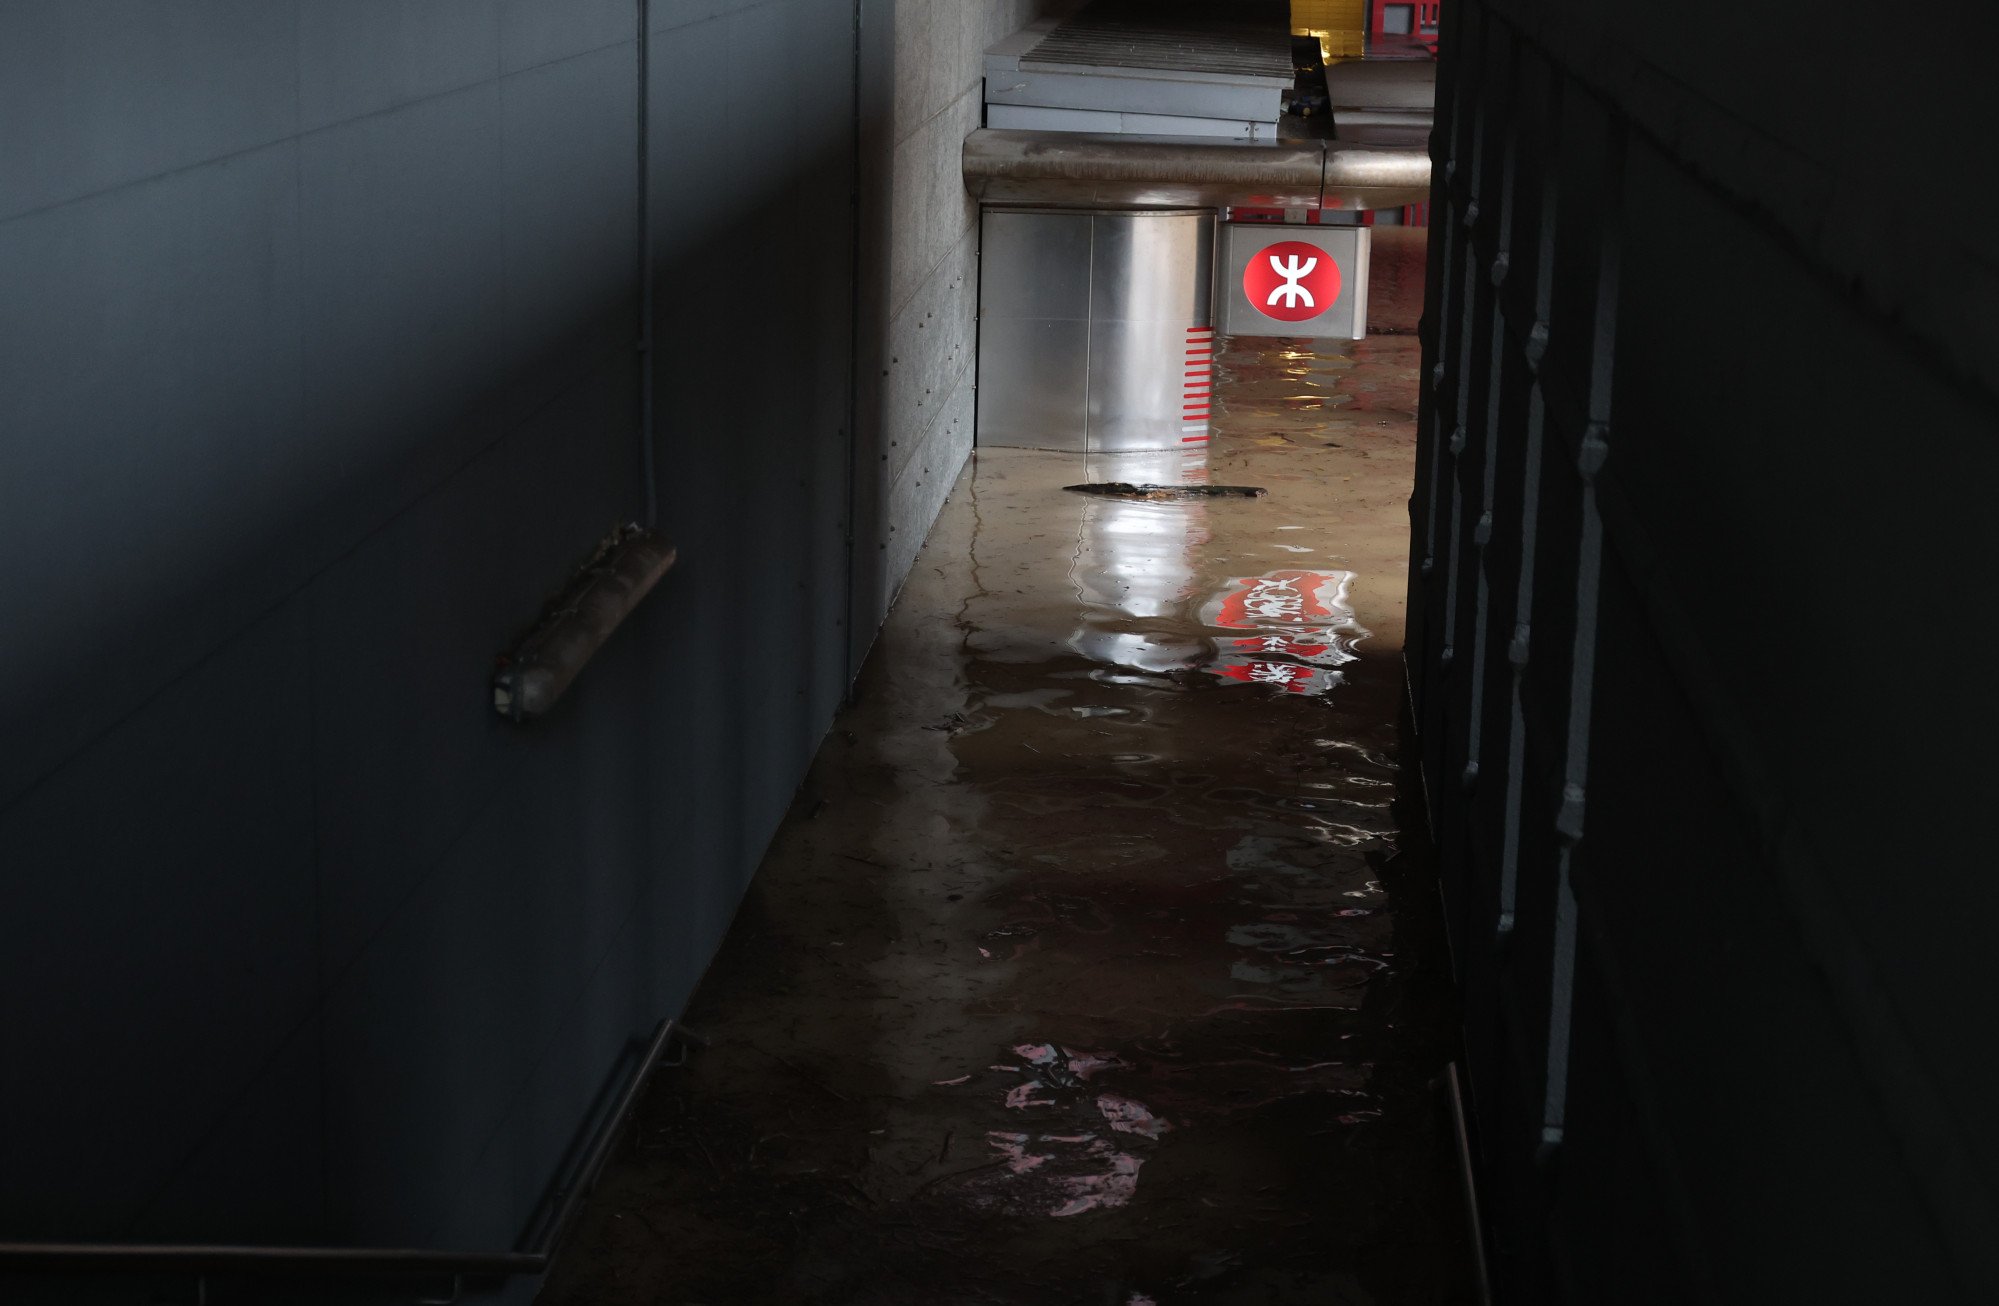 La tormenta de Hong Kong obliga al centro comercial Link Reit a cerrar parcialmente mientras busca evaluar los daños y compensar a los inquilinos